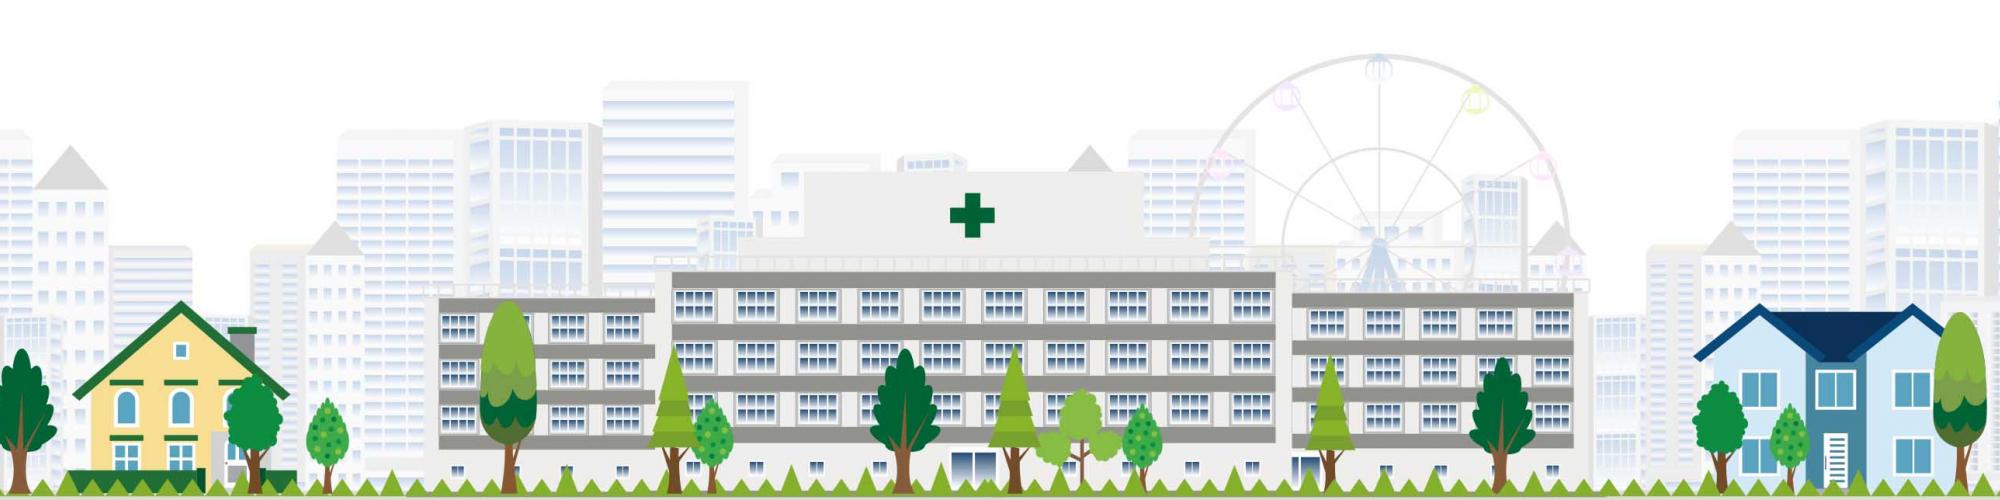 Krankenhaus Buchholz und Winsen gemeinnützige GmbH